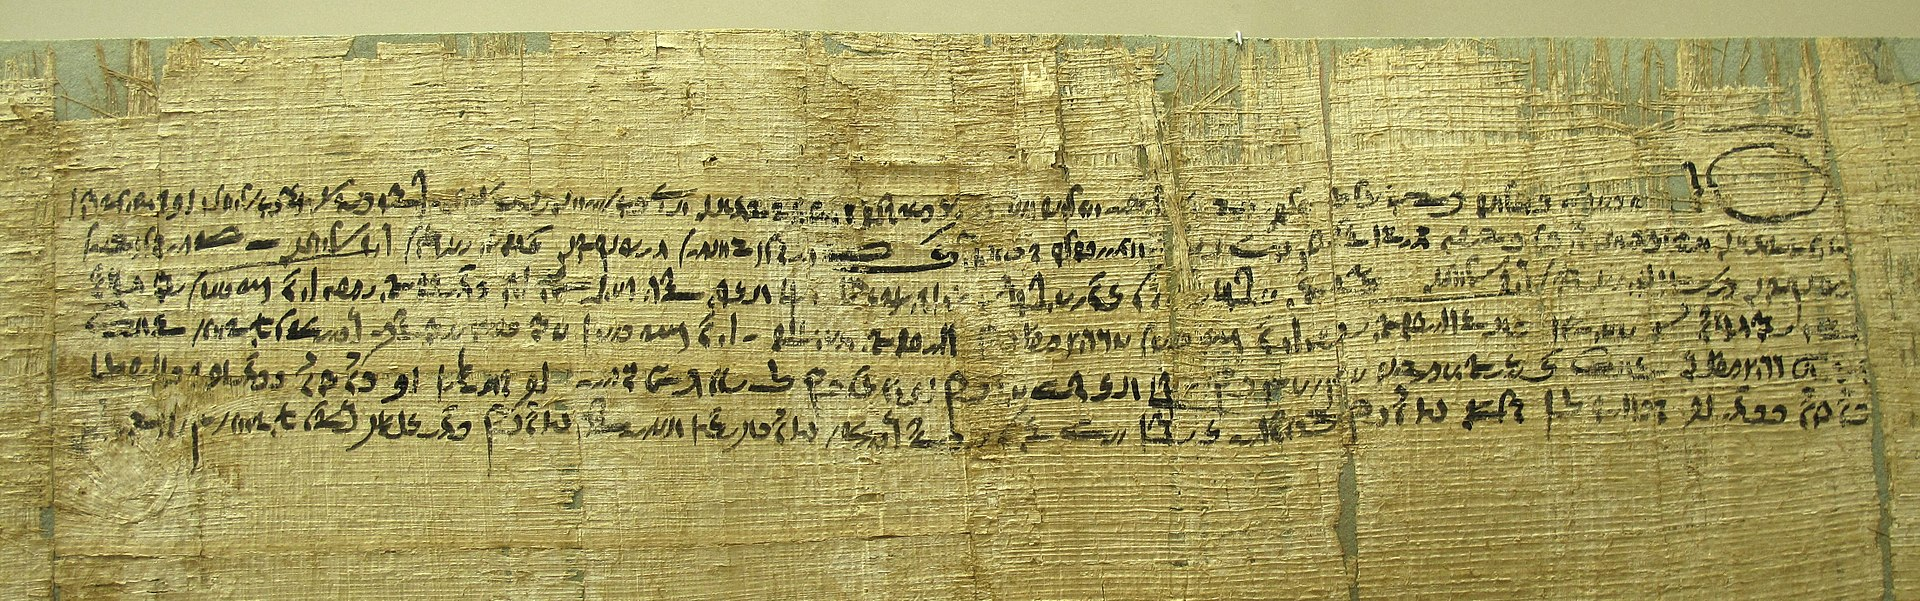 Контракт на папирусе, написанный демотическим письмом. Птолемеевский период (IV-I вв. до н.э.)